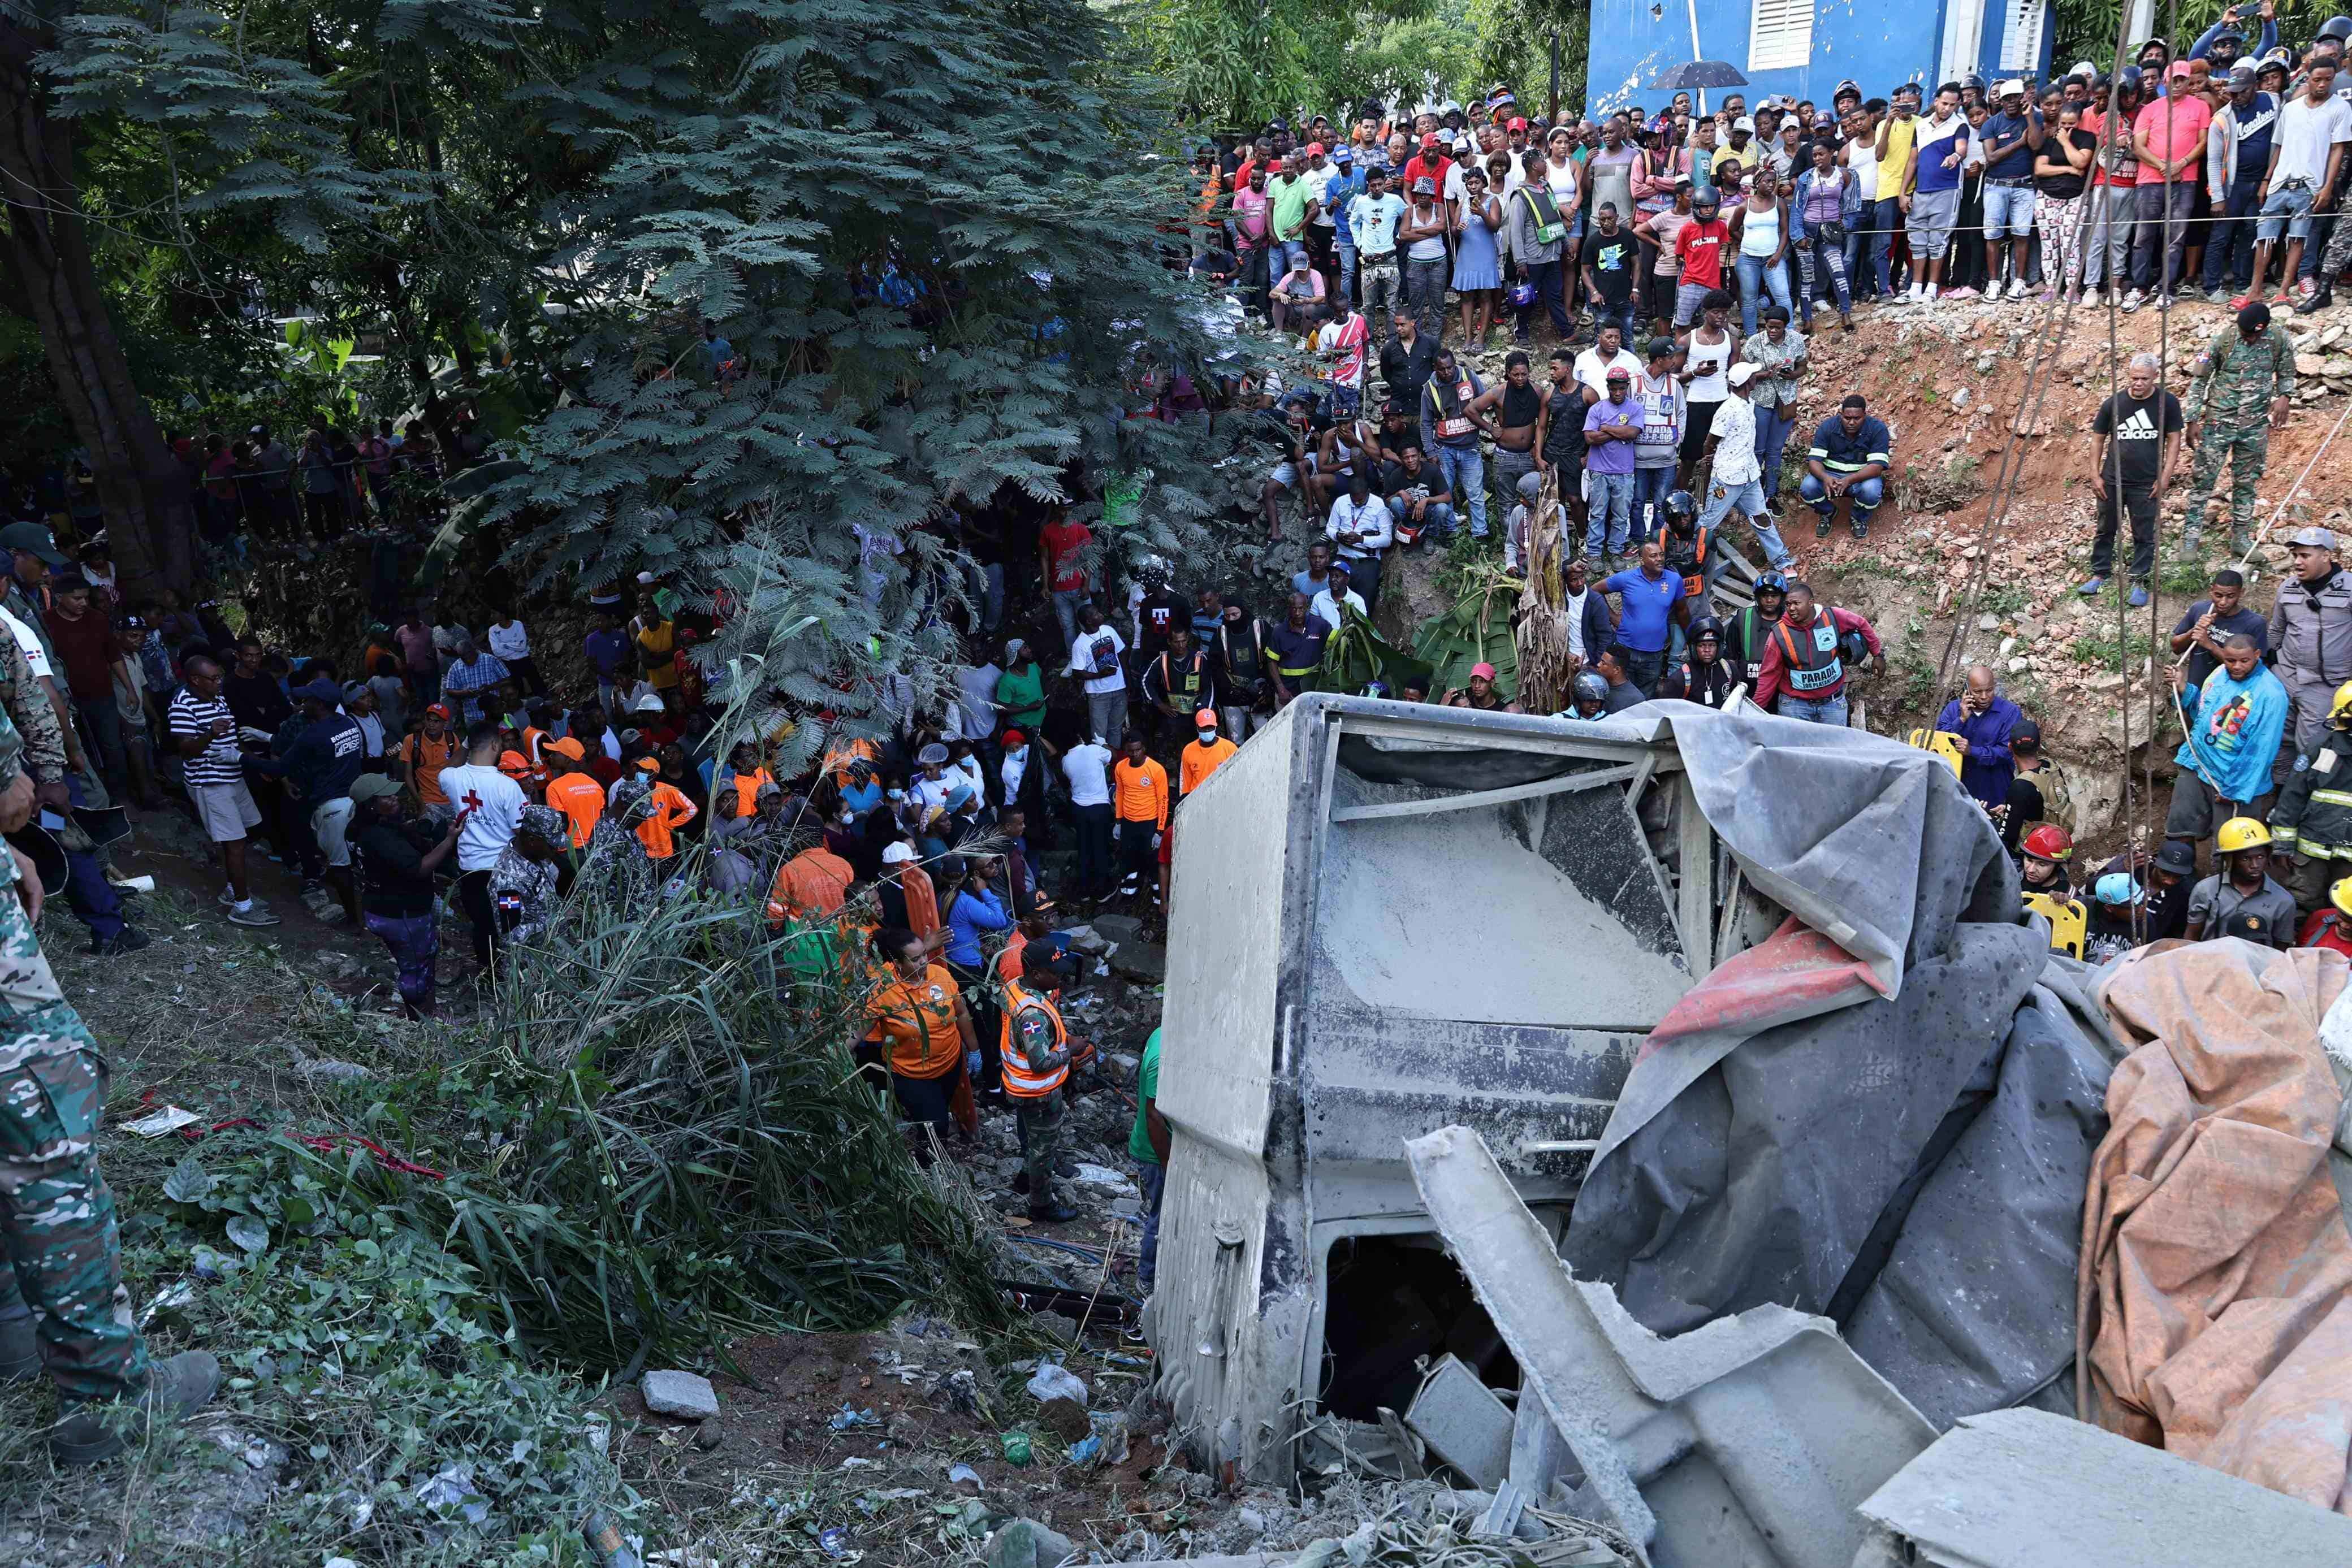 Los organismos de seguridad trabajan intensamente para sacar a las víctimas del autobús que quedó sepultado por la patana en accidente de Haina, San Cristóbal